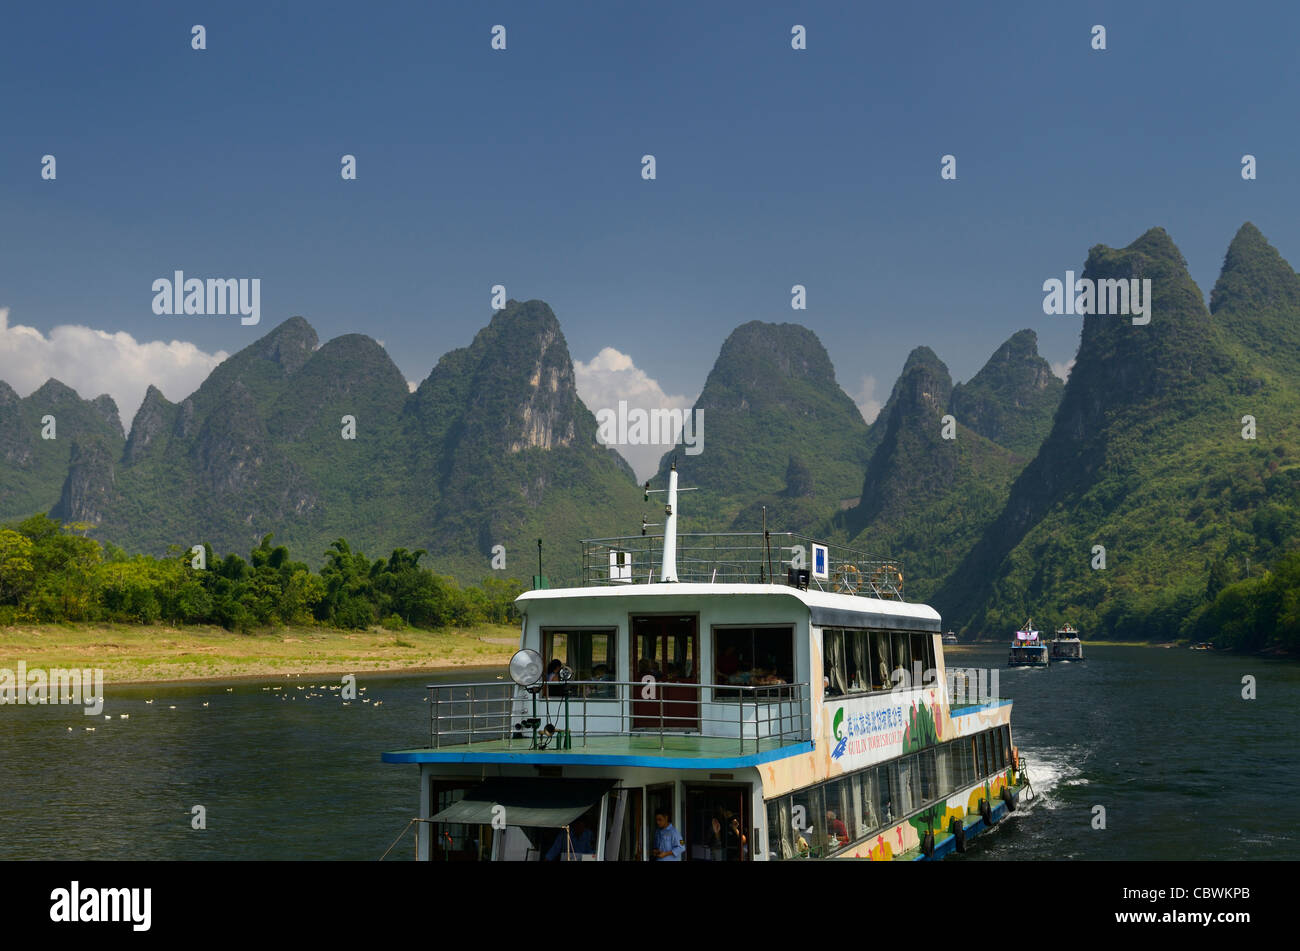 Des bateaux chinois d'une croisière sur la rivière Li Guangxi République populaire de Chine avec de hauts pics calcaires Banque D'Images